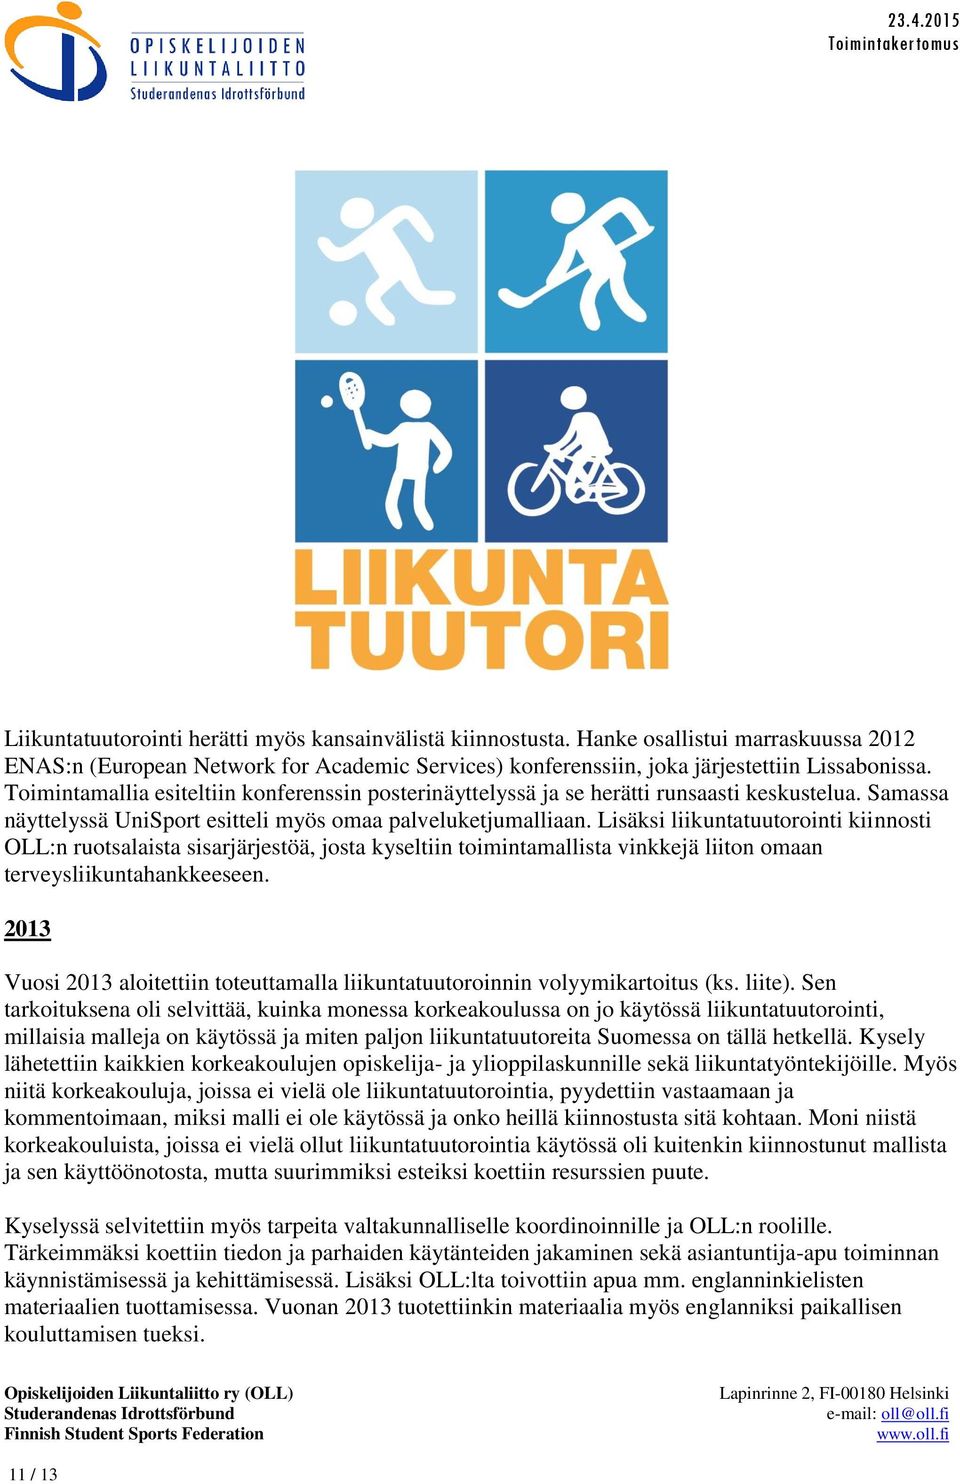 Lisäksi liikuntatuutorointi kiinnosti OLL:n ruotsalaista sisarjärjestöä, josta kyseltiin toimintamallista vinkkejä liiton omaan terveysliikuntahankkeeseen.